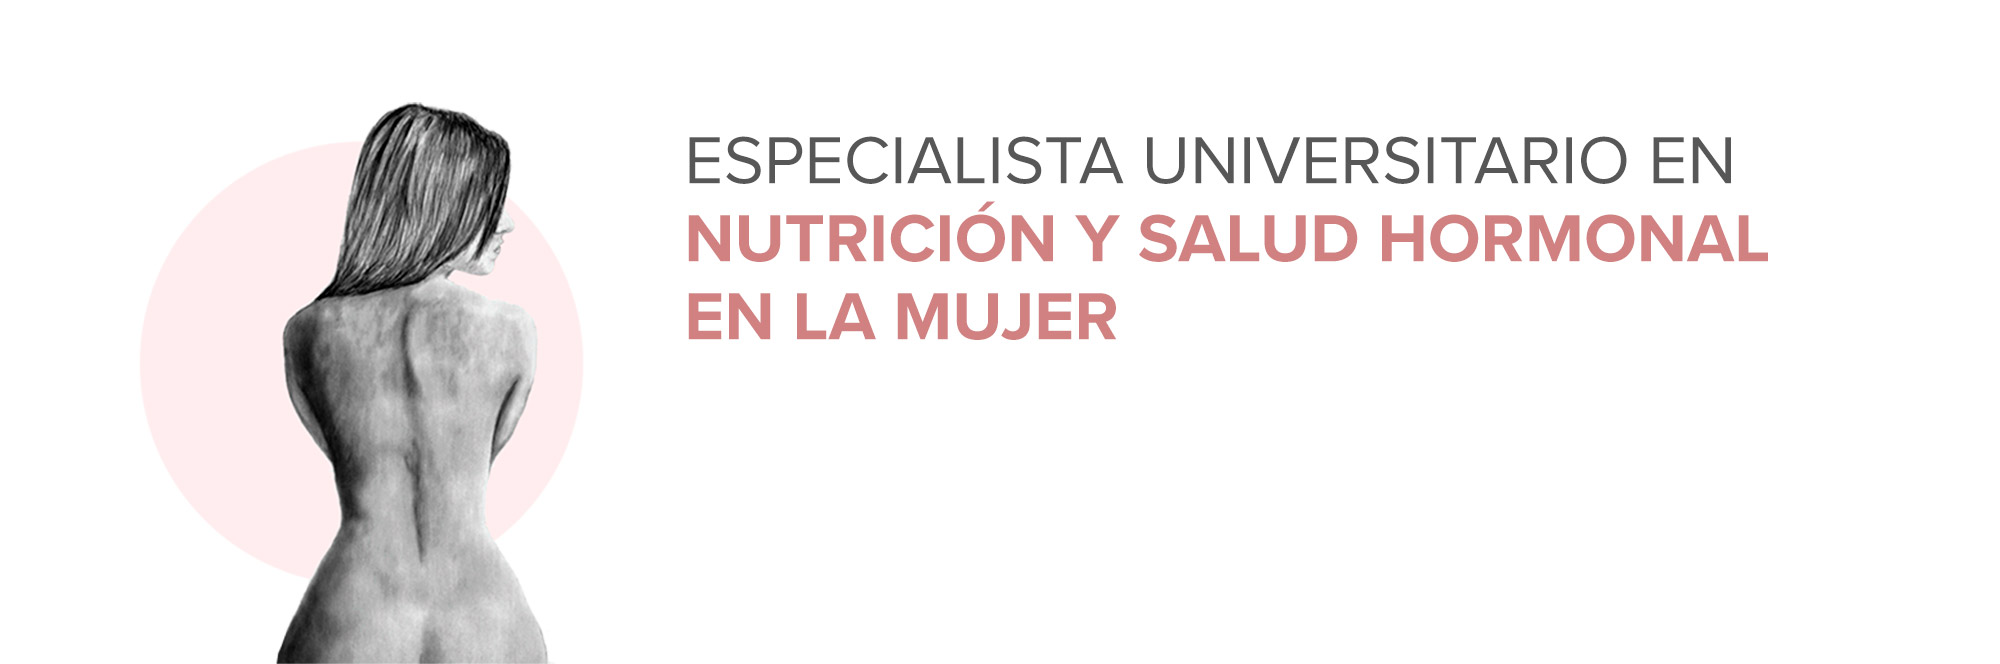 Especialista Universitario en Nutrición y Salud Hormonal en la Mujer (MHORMONAL3)